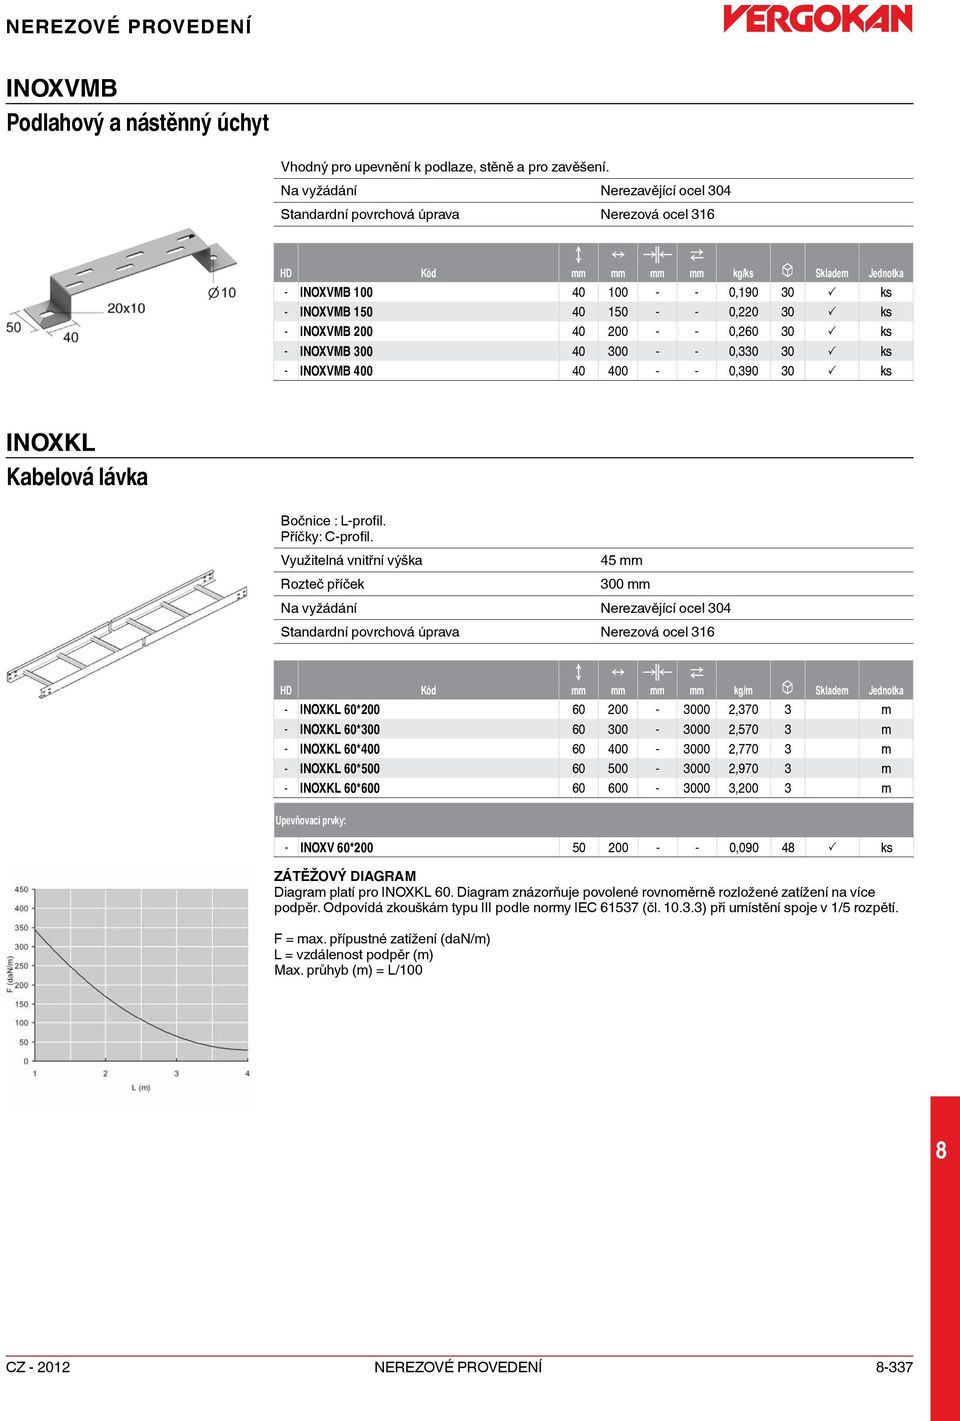 P ks - IOXVMB 400 40 400 - - 0,390 30 P ks IOXKL Kabelová lávka Bočnice : L-profil. Příčky: -profil.